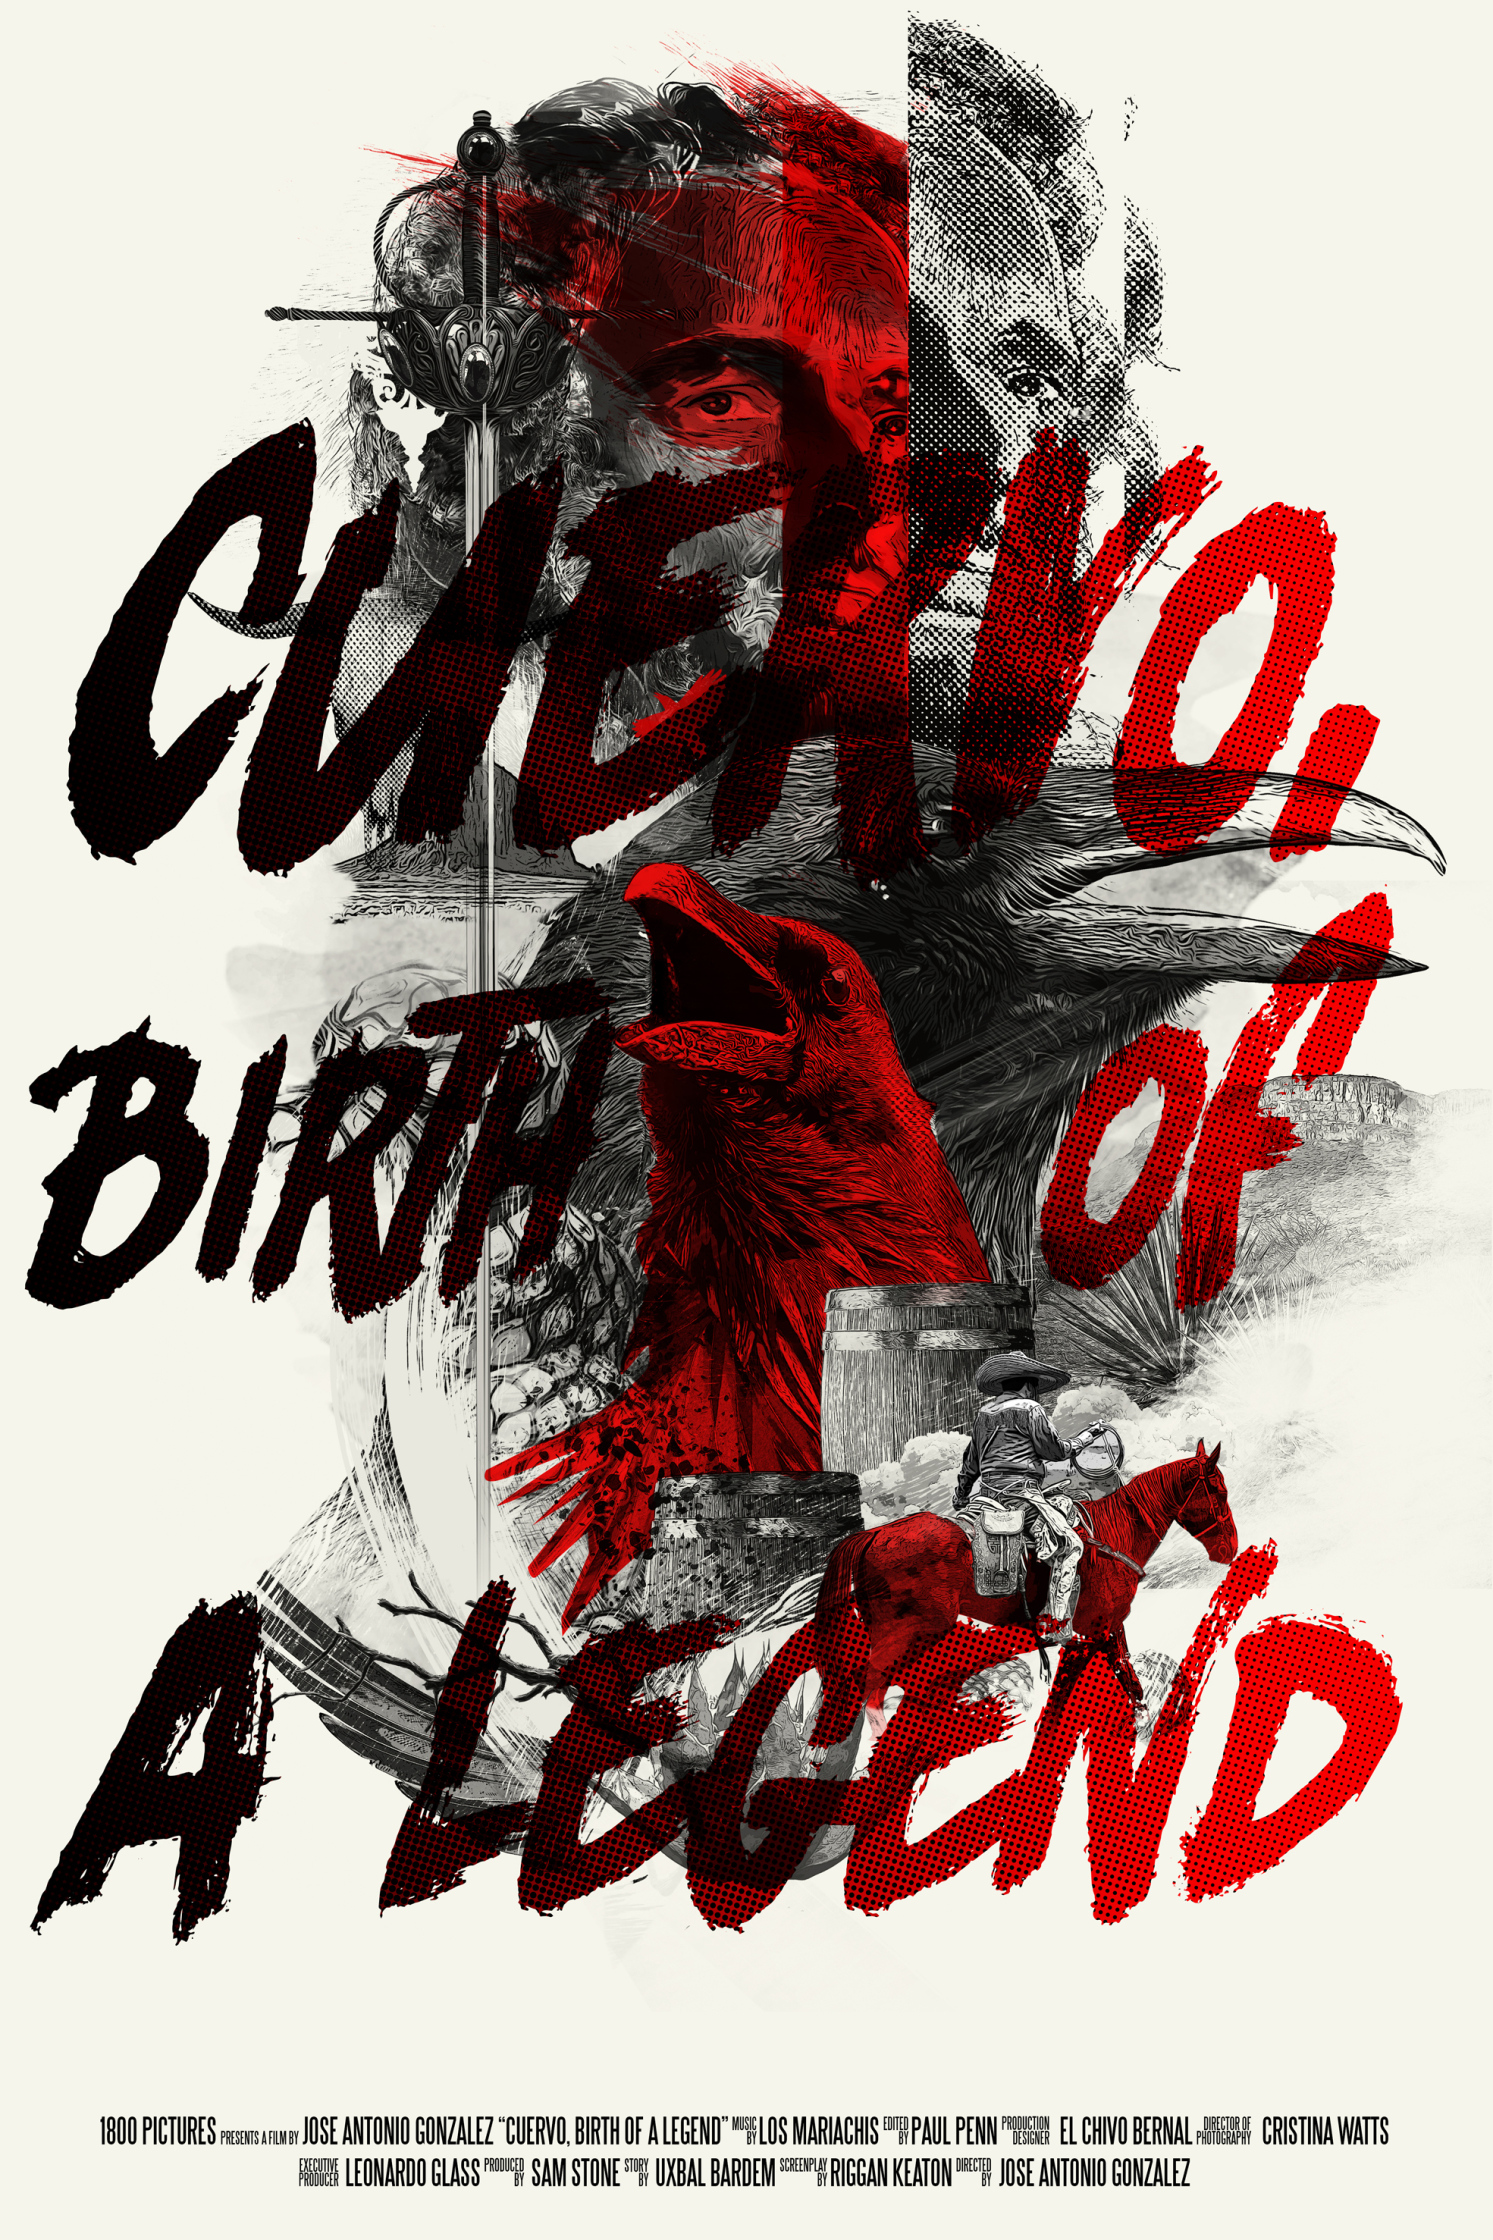 Cuervo,-Birth-Of-A-Legend-HiRes.jpg